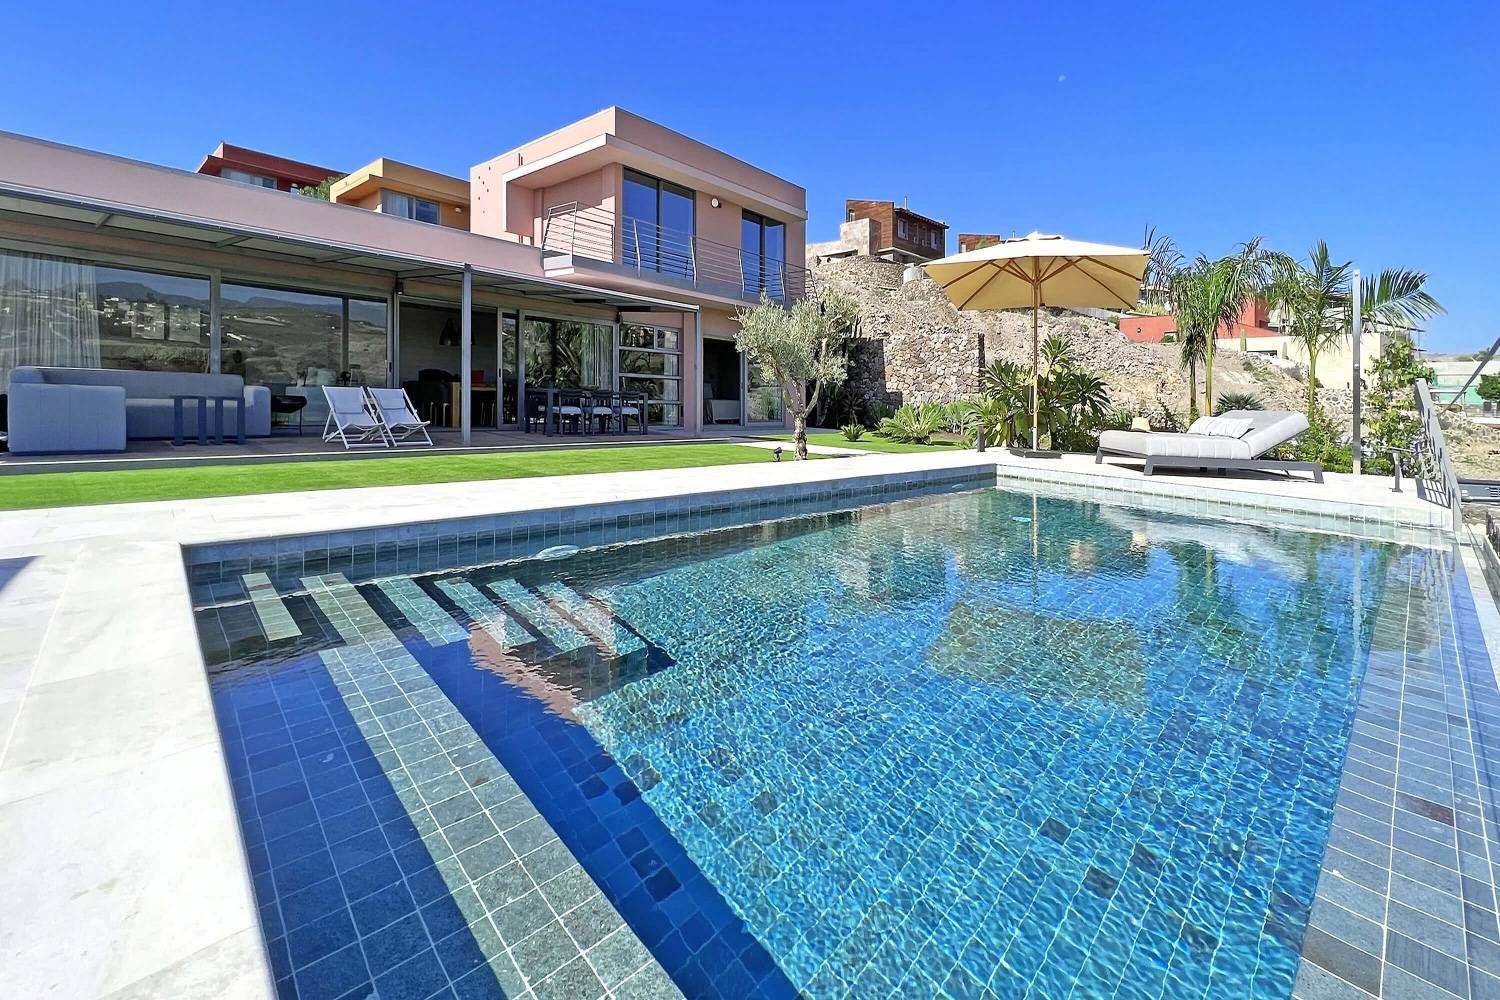 Bella villa di lusso, luminosa, arredata con gusto e ampia terrazza con piscina privata.